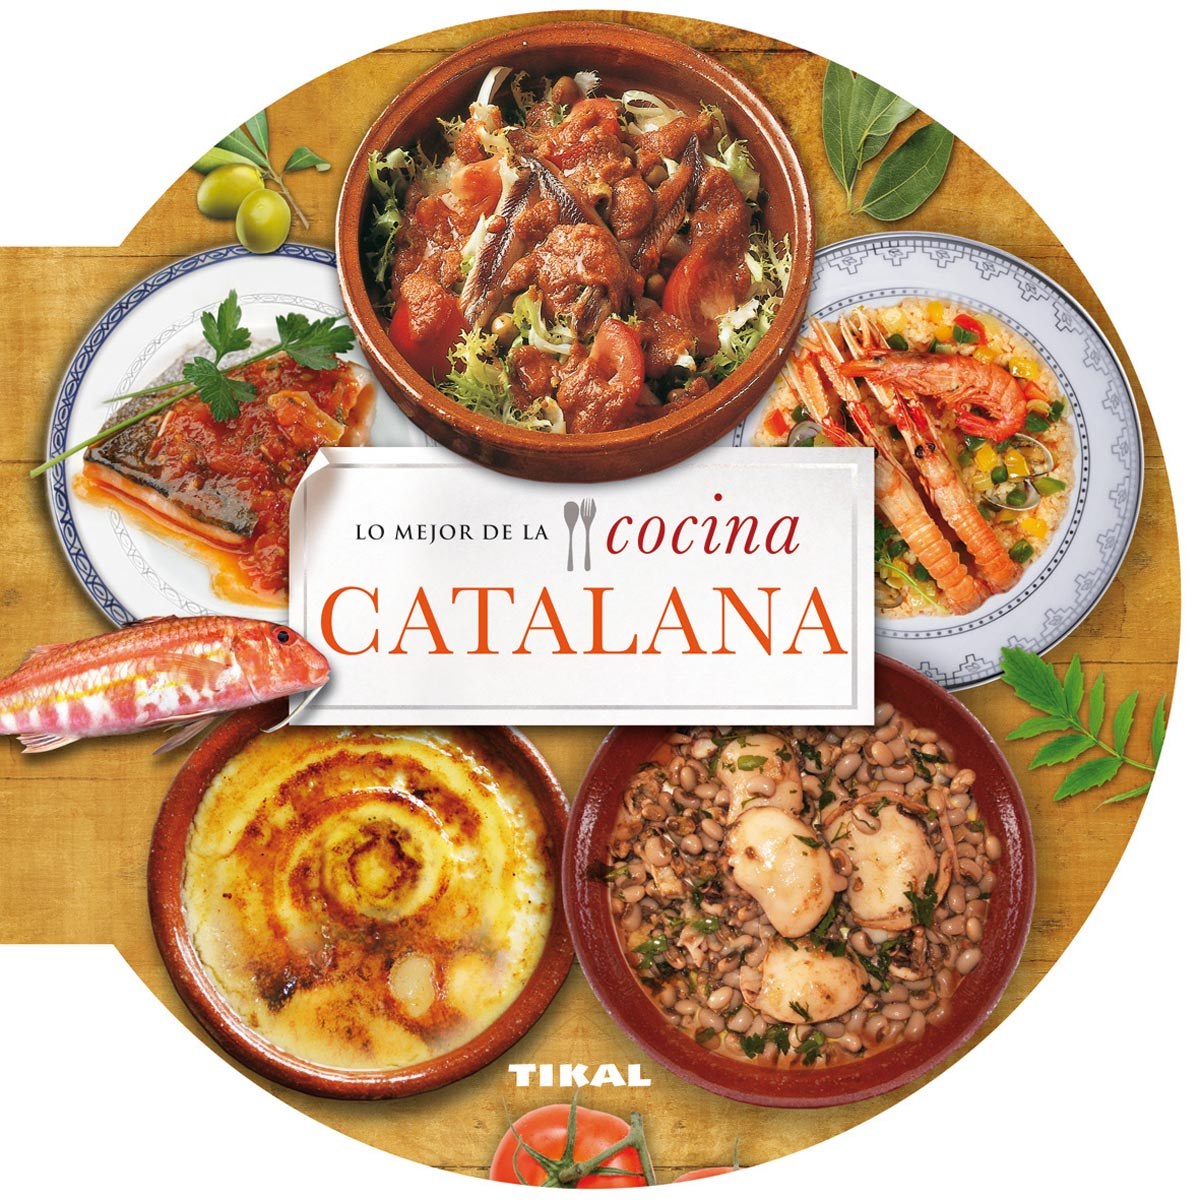 Lo mejor de la cocina catalana - Vv.Aa.